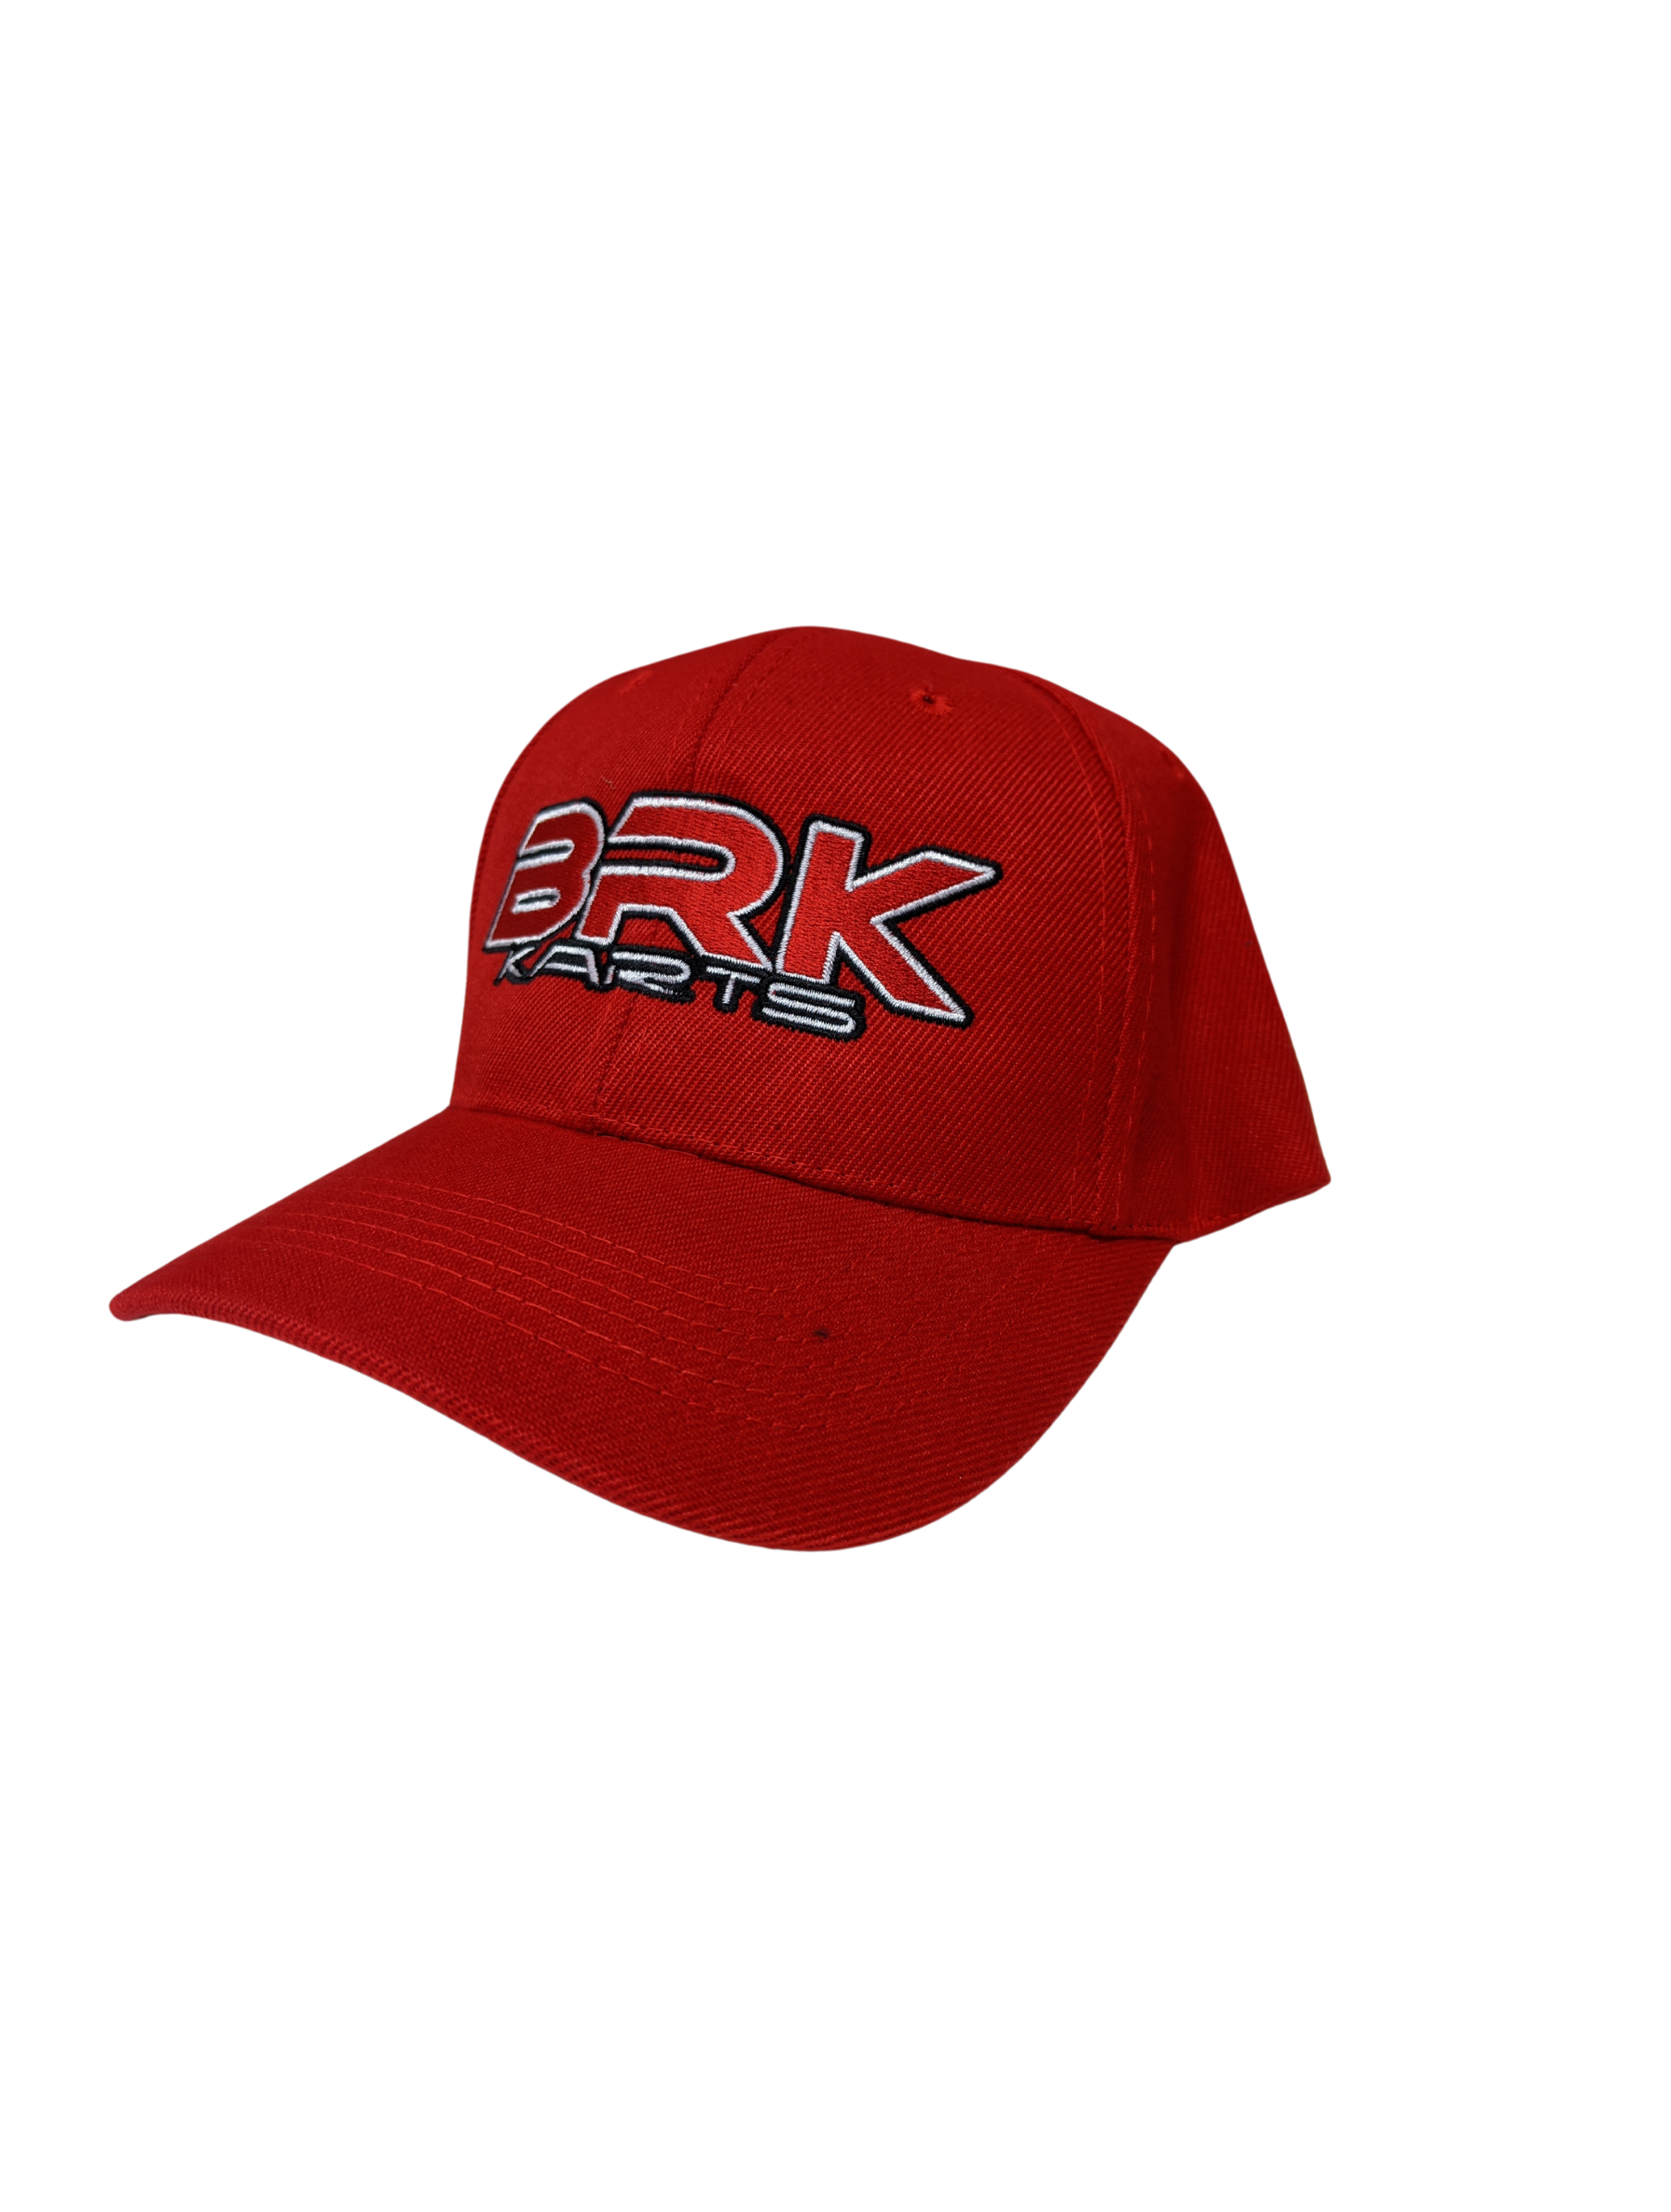 BRK Cap